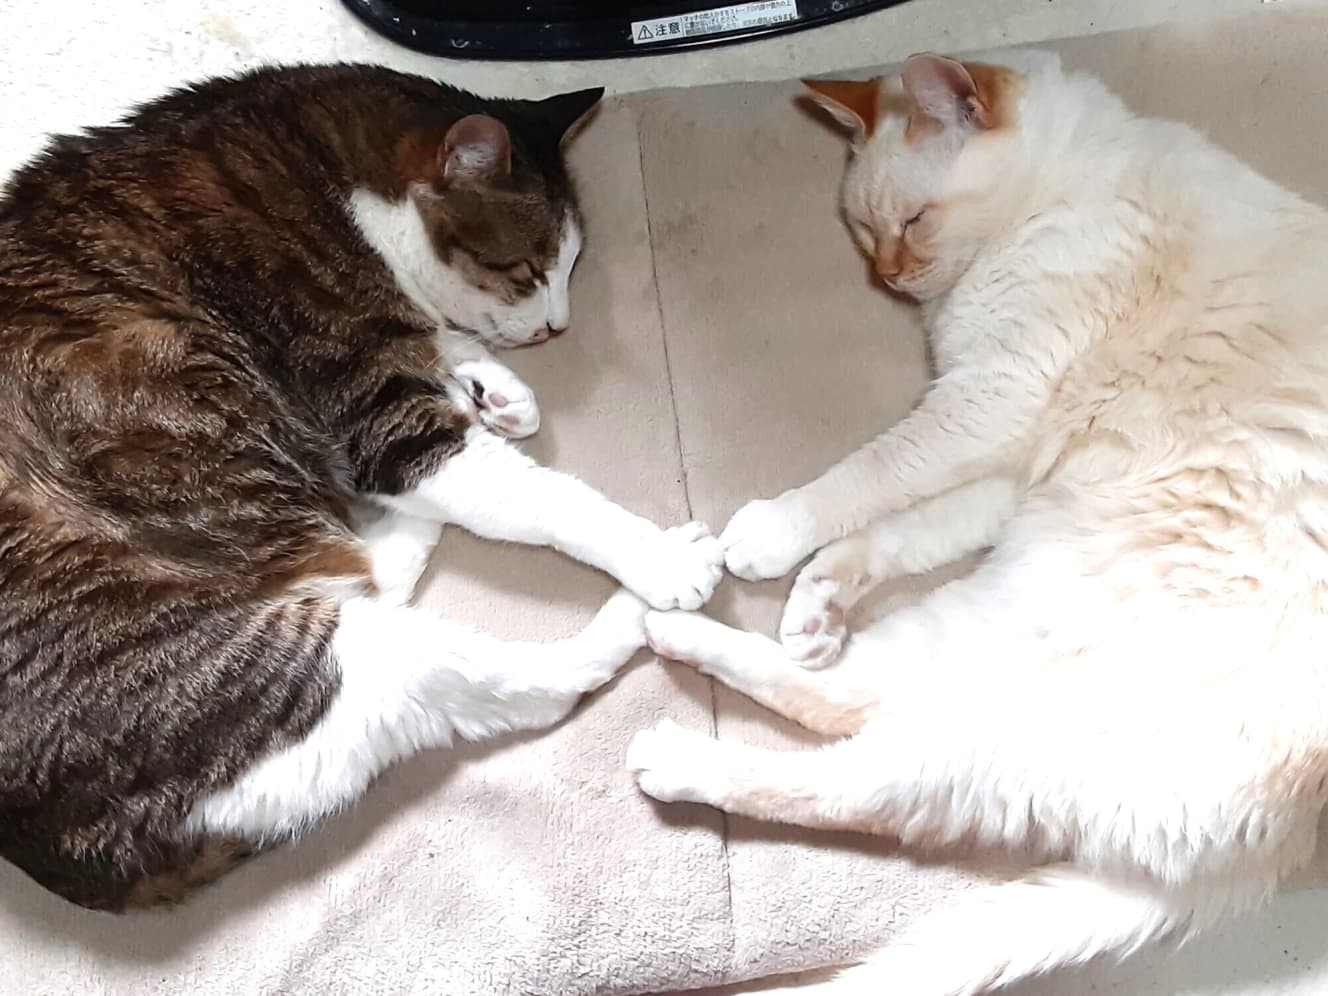 “ハートマーク寝”する玉乃井氏の愛猫２匹。お気に入りの一枚で「このコたちのために頑張らなきゃ、と思う」